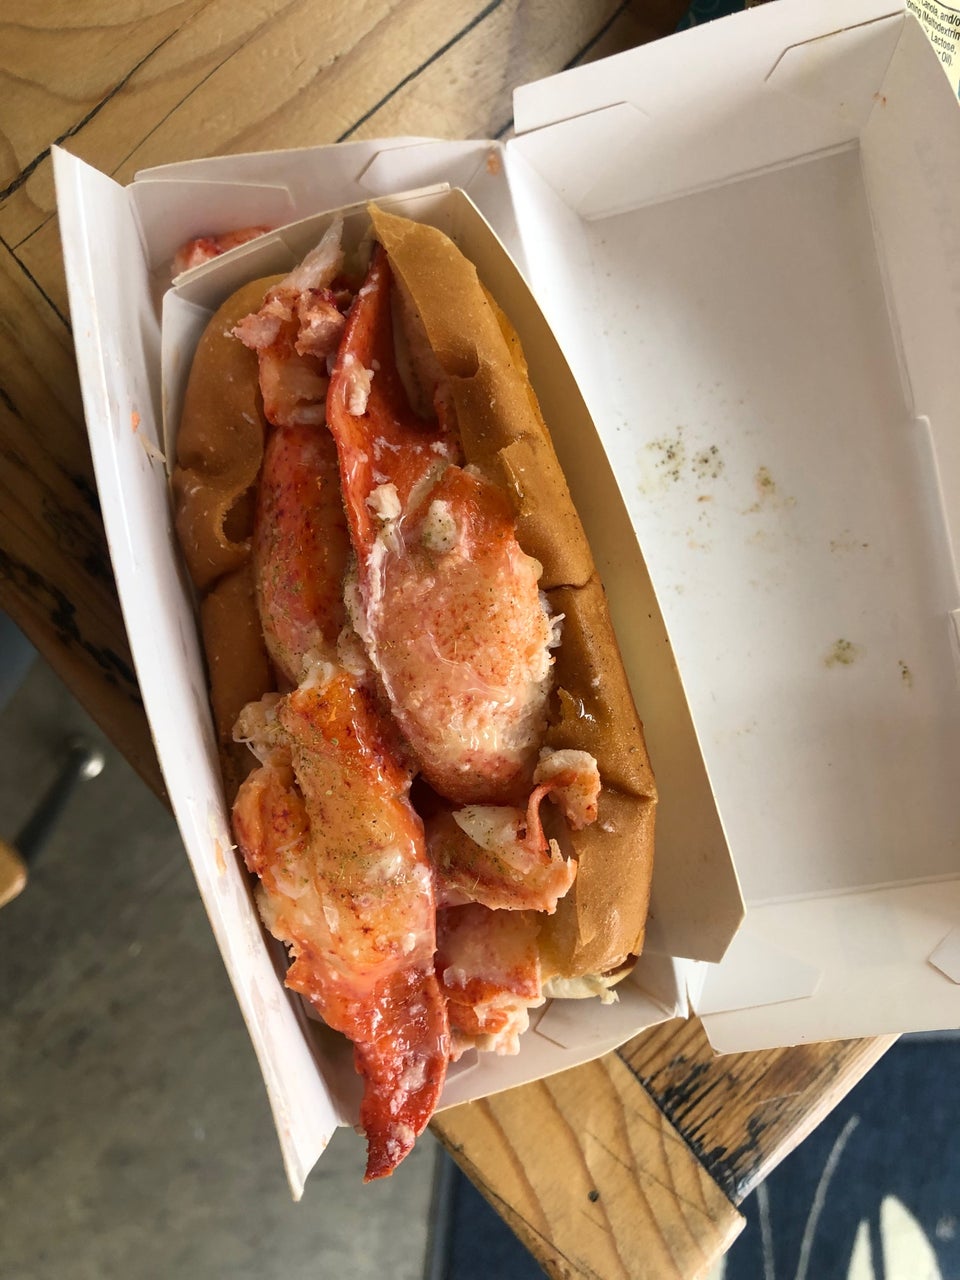 Luke's Lobster SoMa